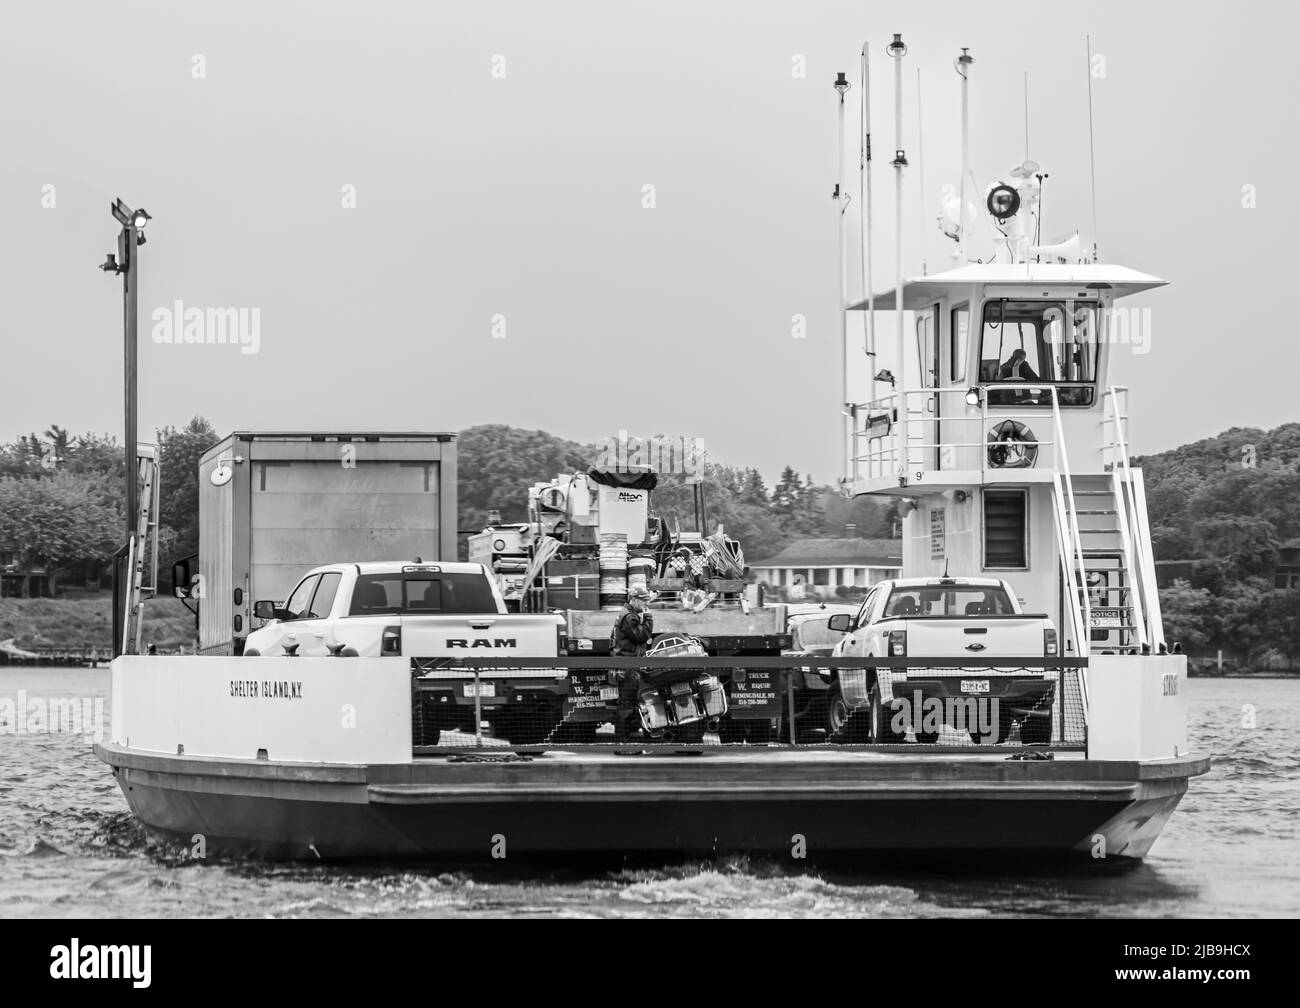 Imagen en blanco y negro del ferry Shelter Island, verano de 2022 Foto de stock